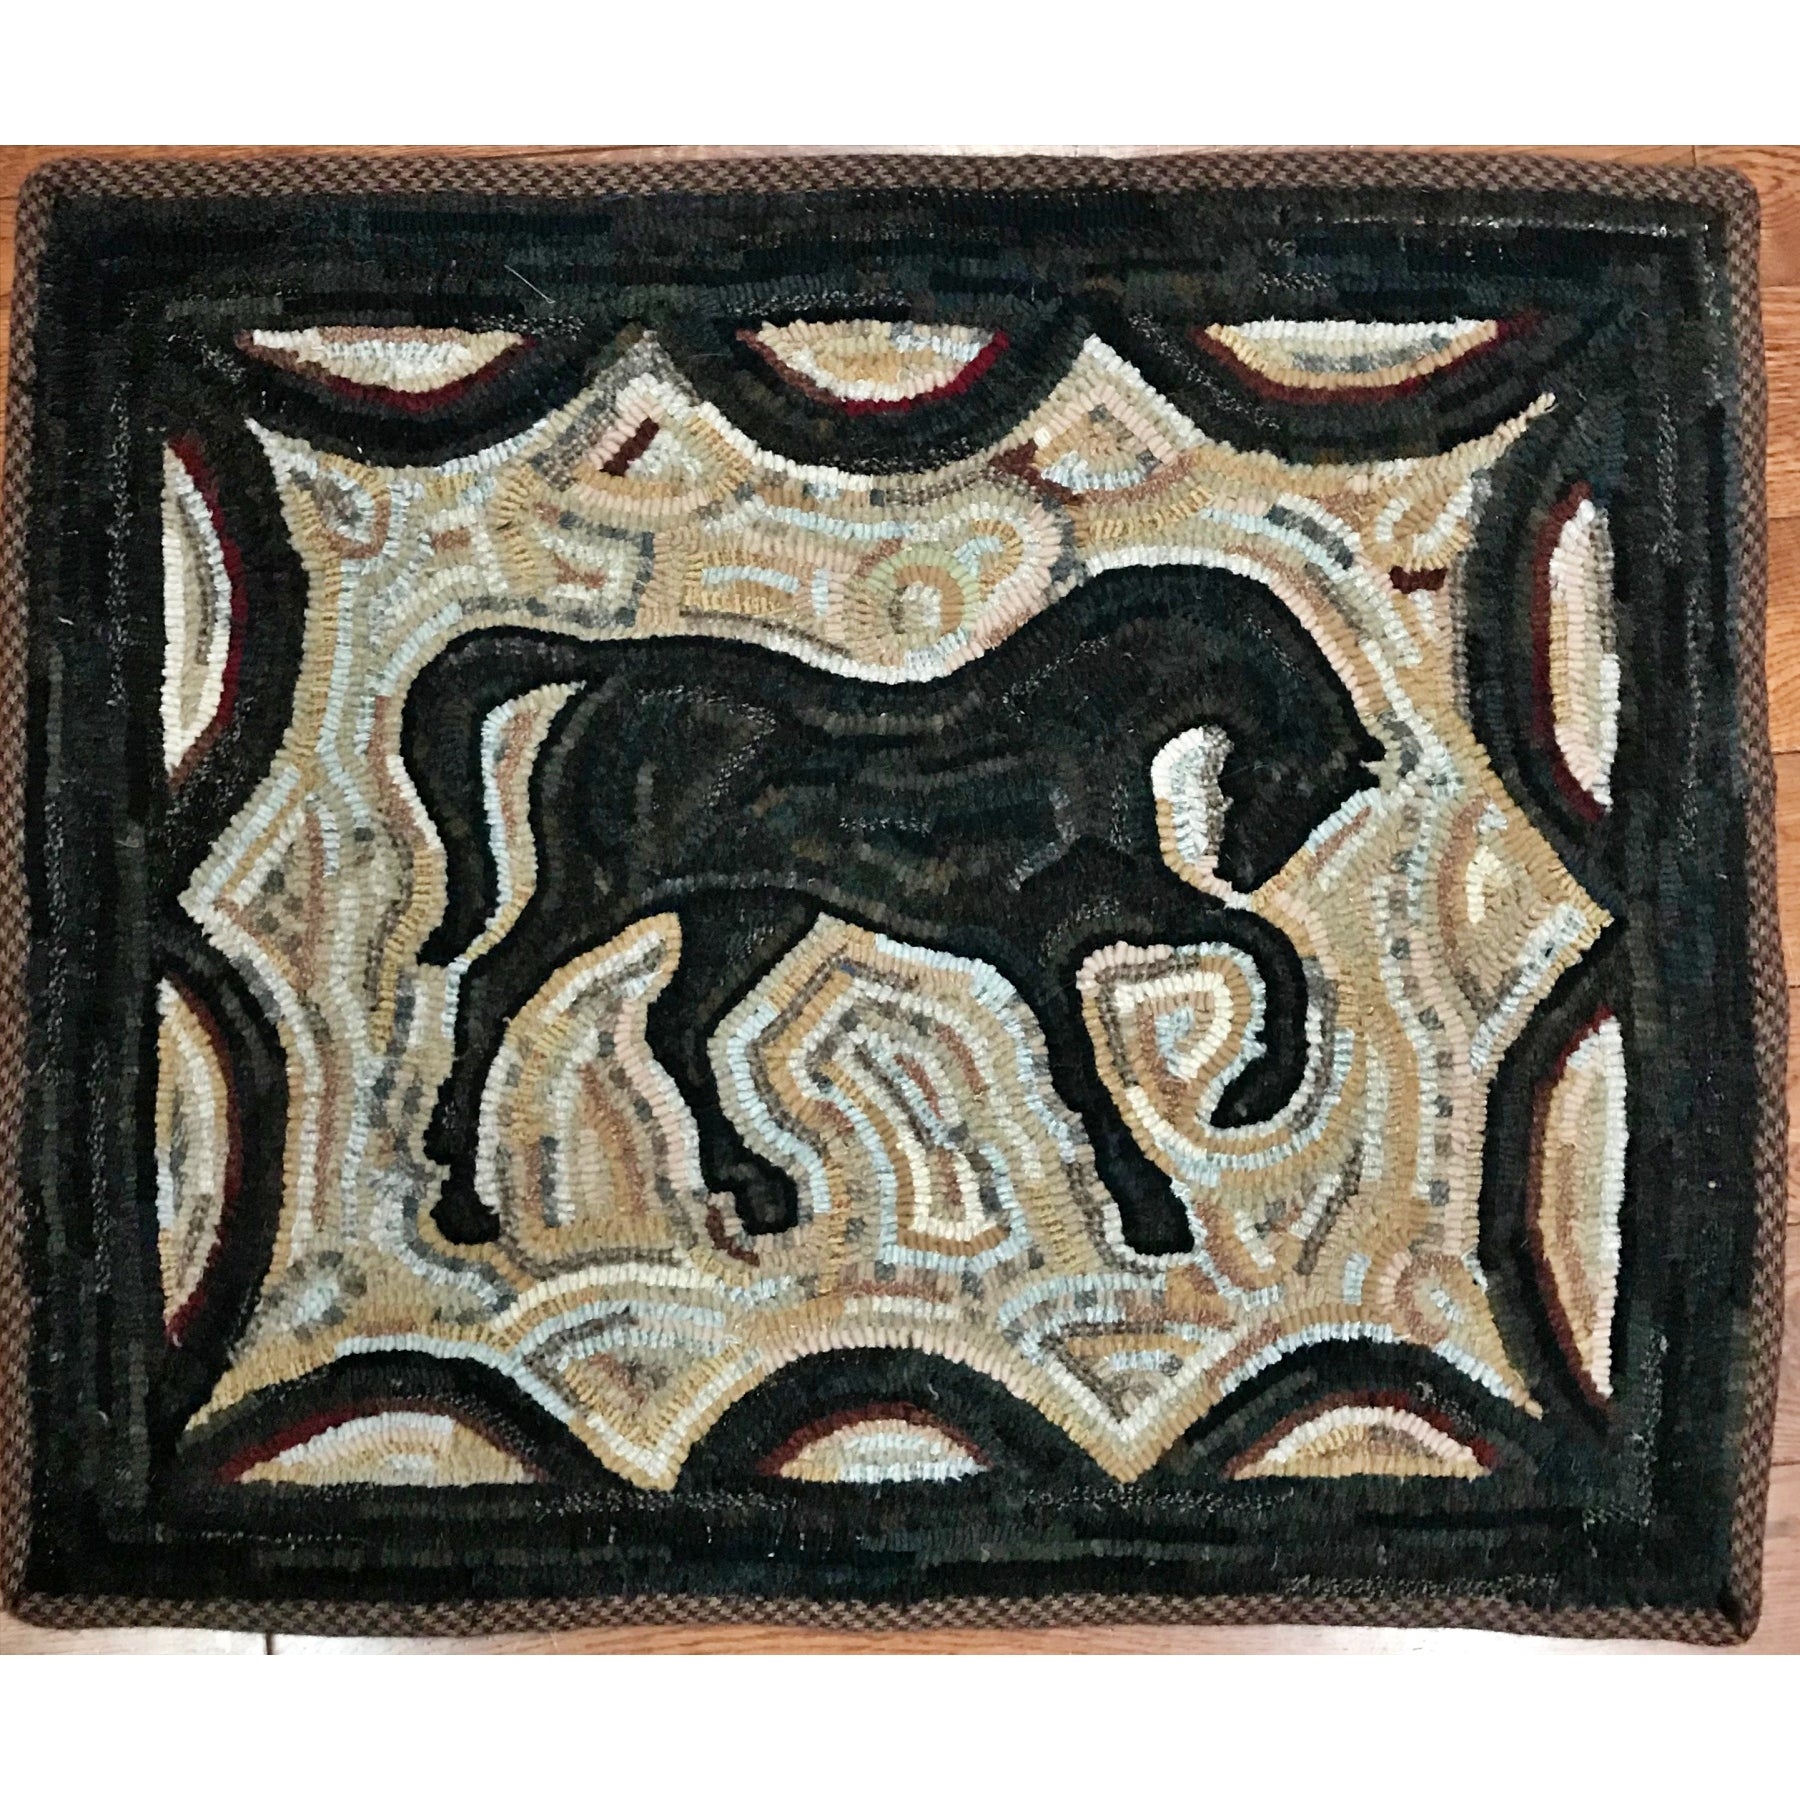 Horse, rug hooked by Teresa Steele